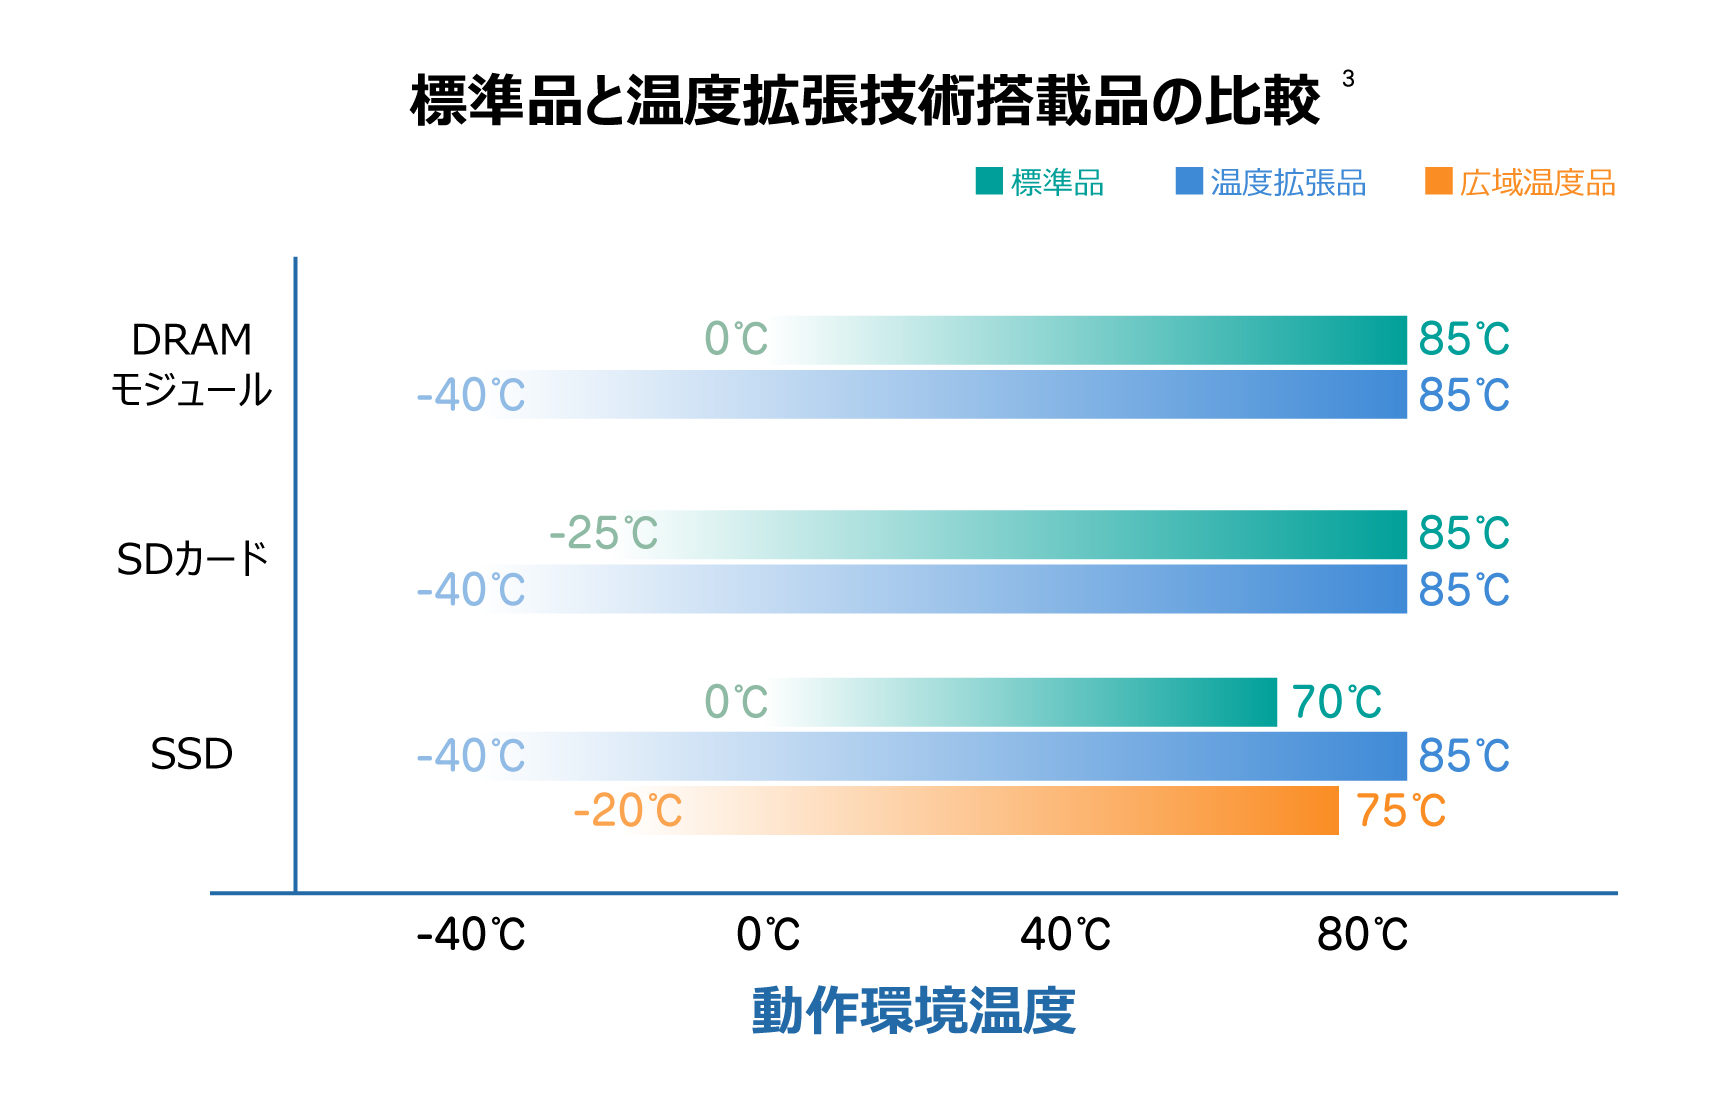 標準品と温度拡張技術搭載品の比較のグラフ